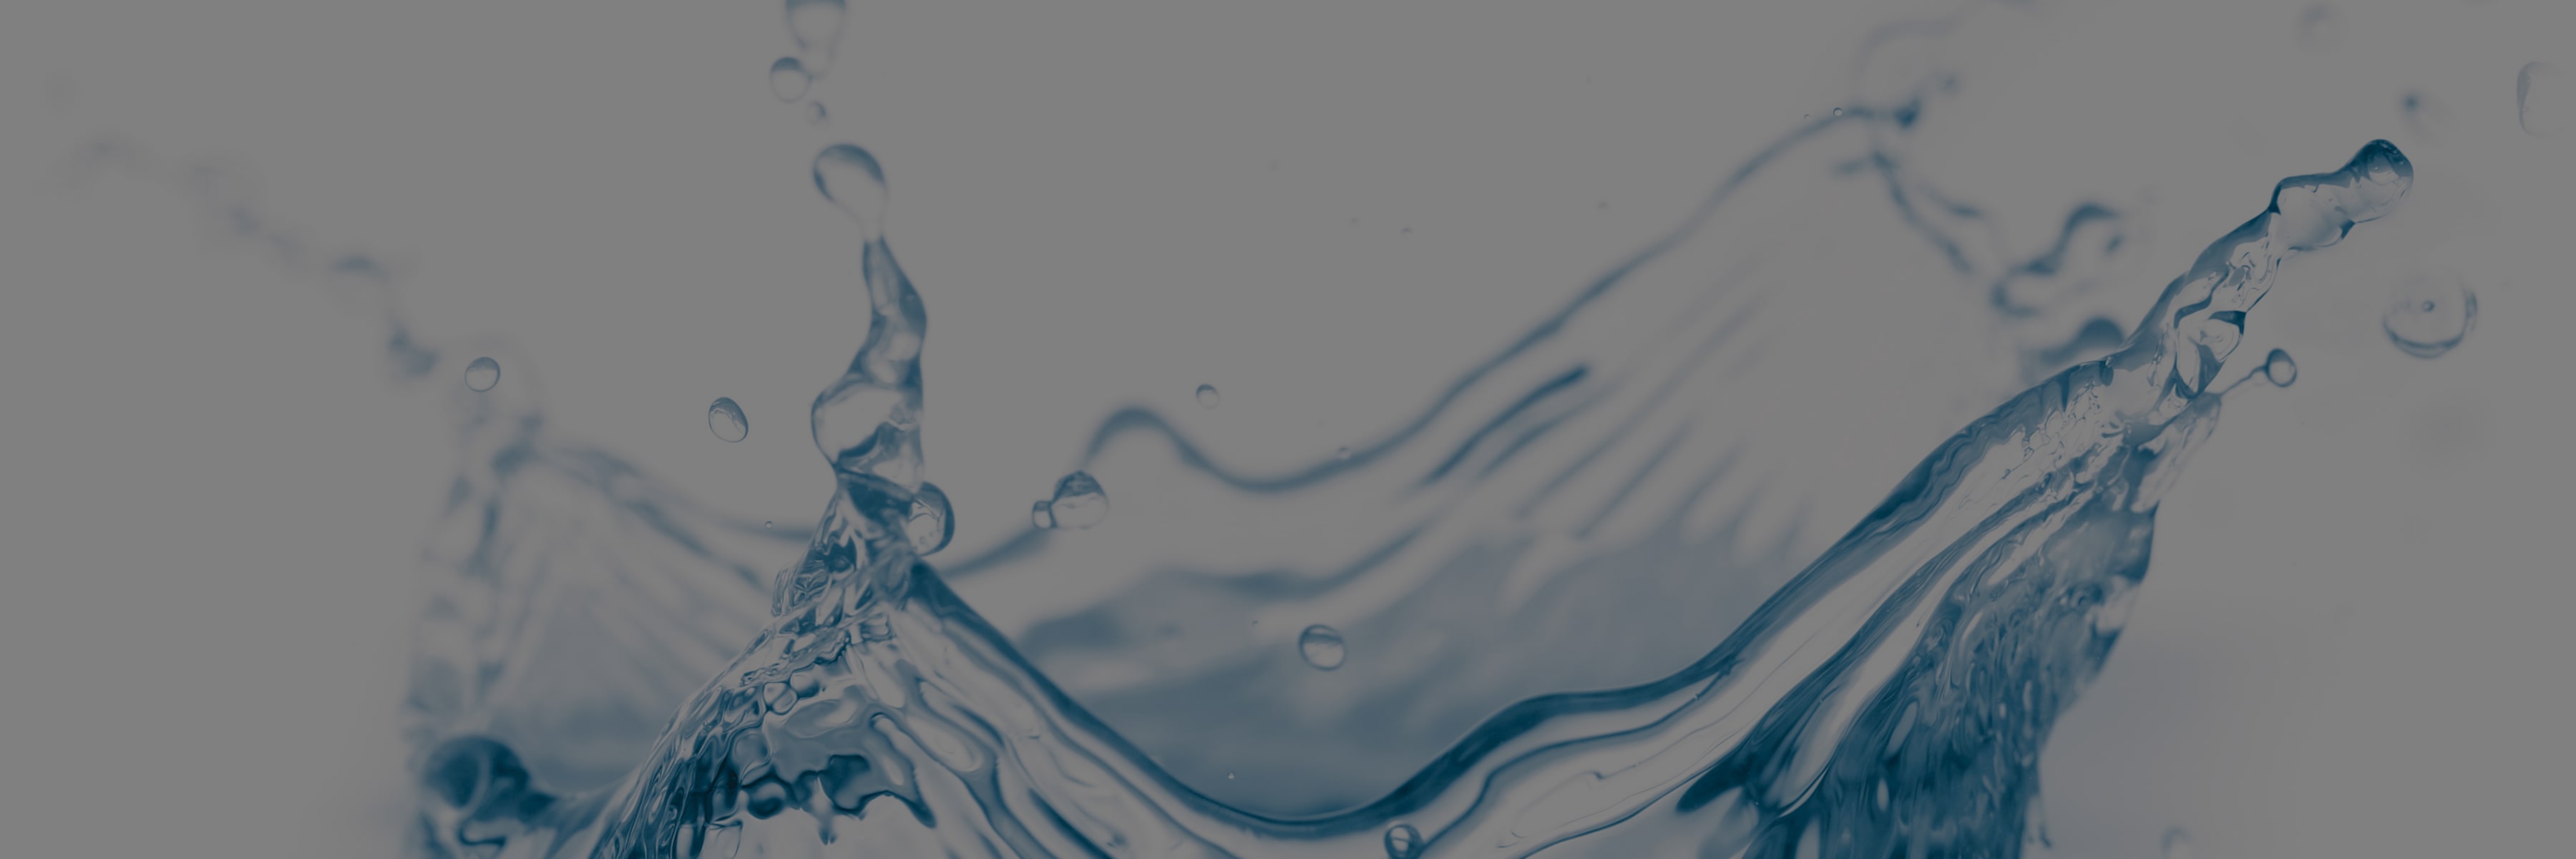 naem-webinar-2014-developing-a-water-management-strategy-1800x600-min